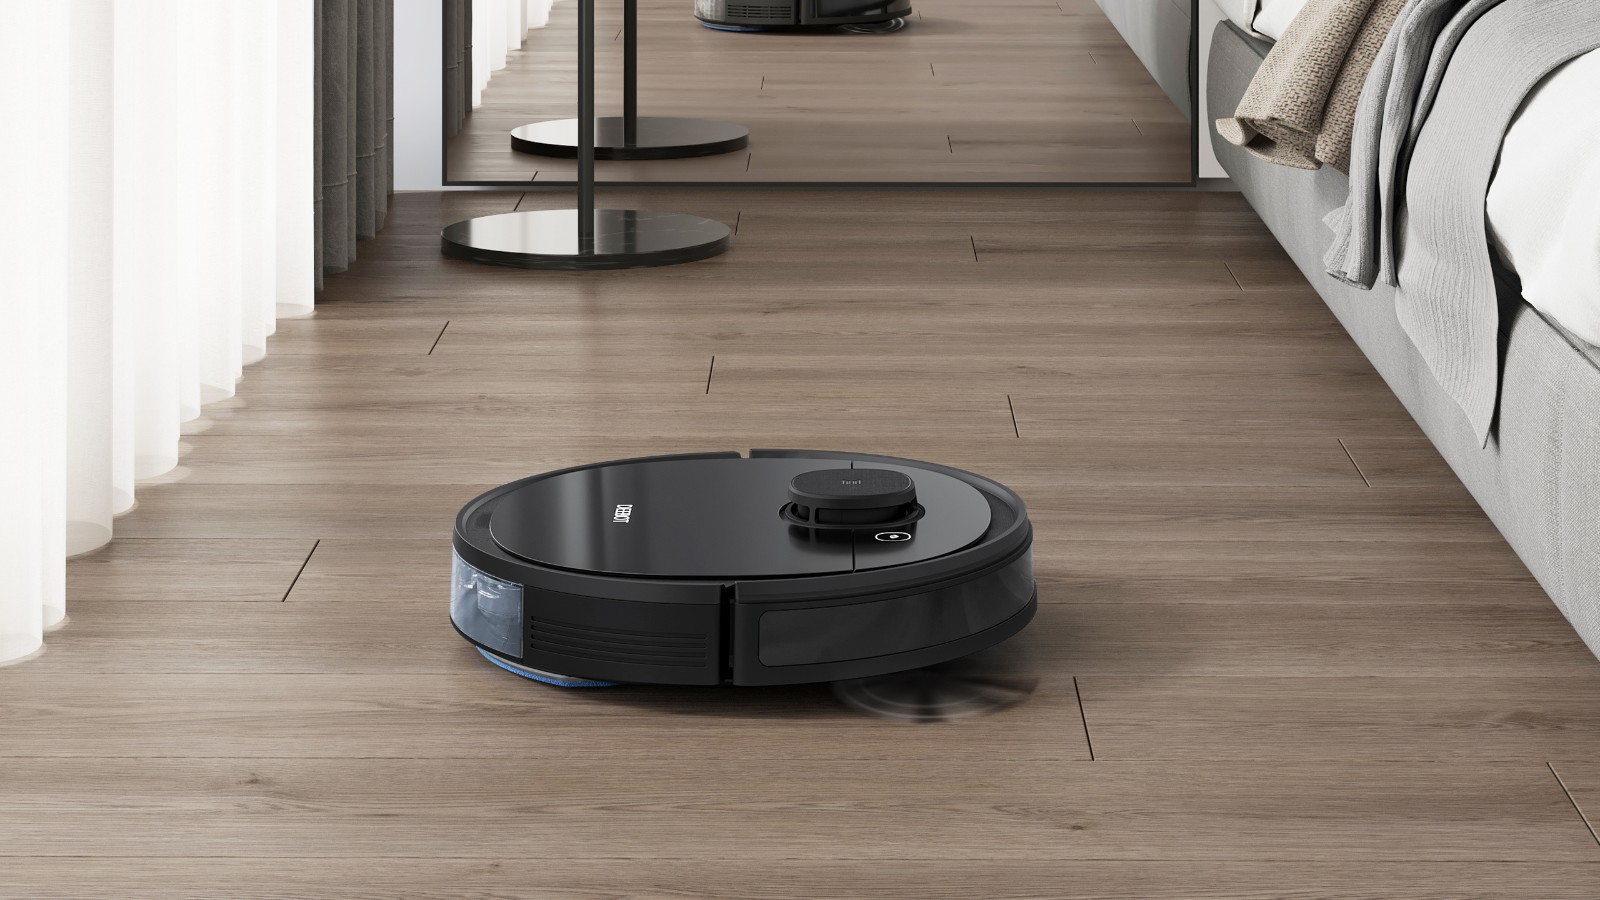 squarerooms ecovacs deebot robot vacuum